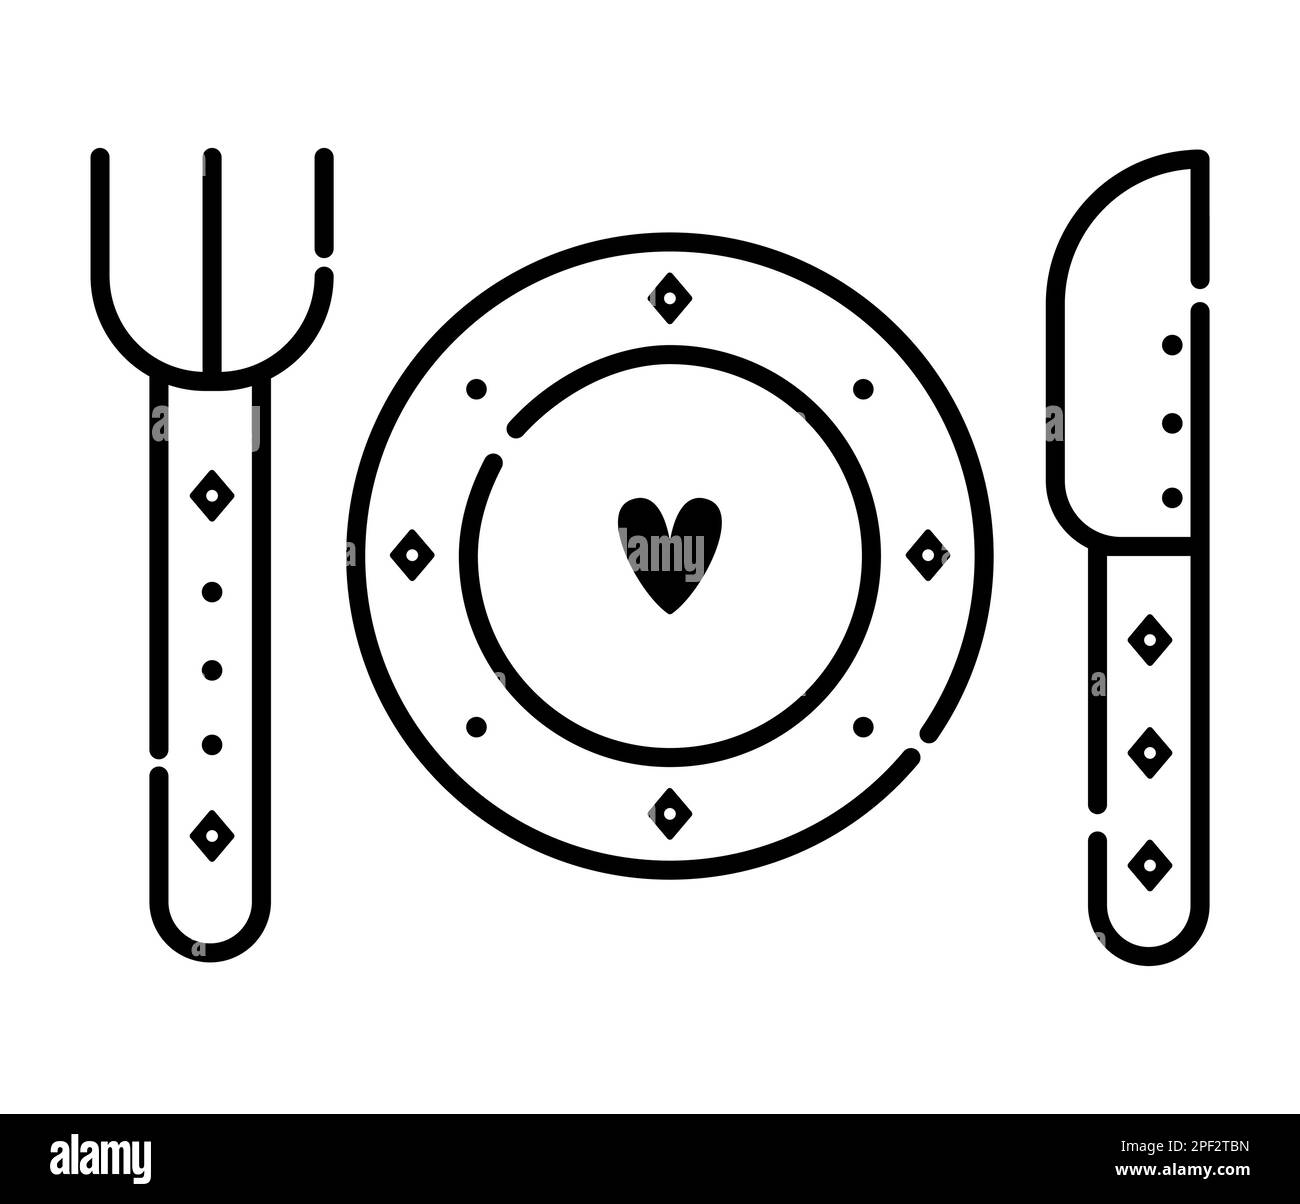 Romantisches Abendessen, Utensilien (Gabel, Teller und Messer), schwarze und weiße Illustration Stock Vektor